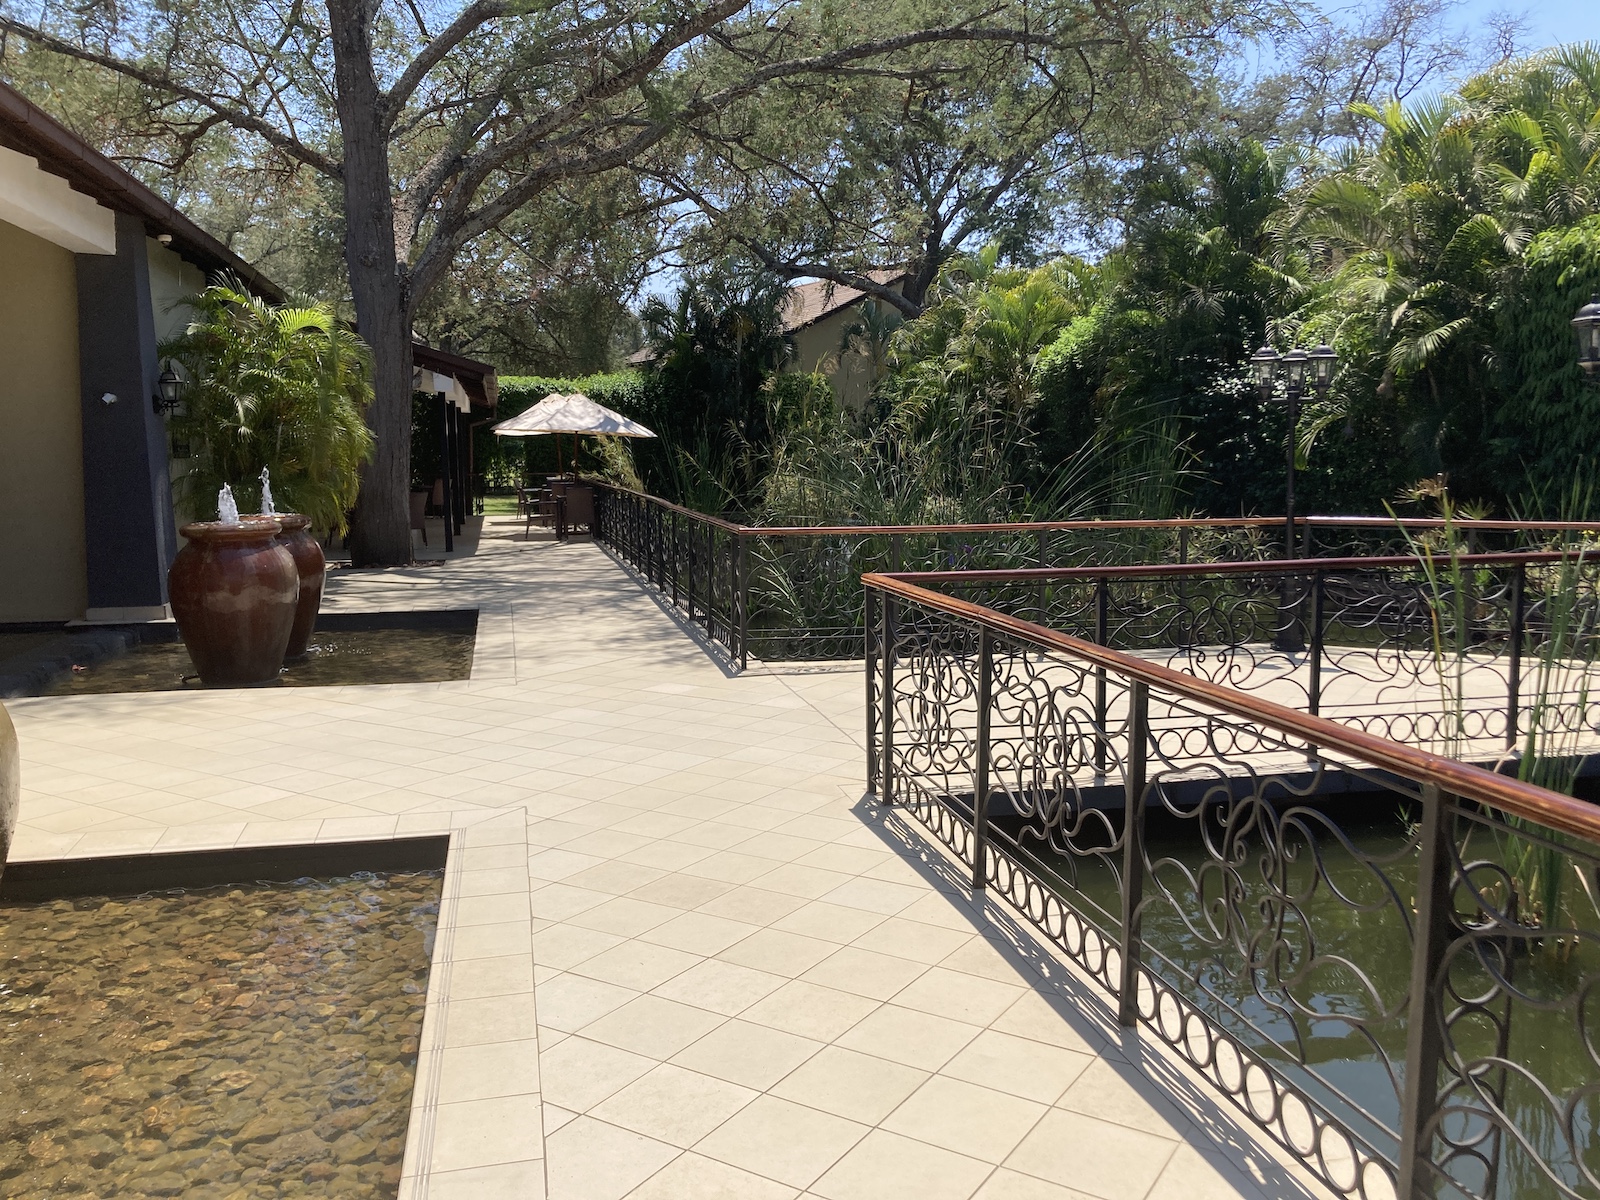 Protea Livingstone Hotel Review – A Marriott Property Near Victoria Falls